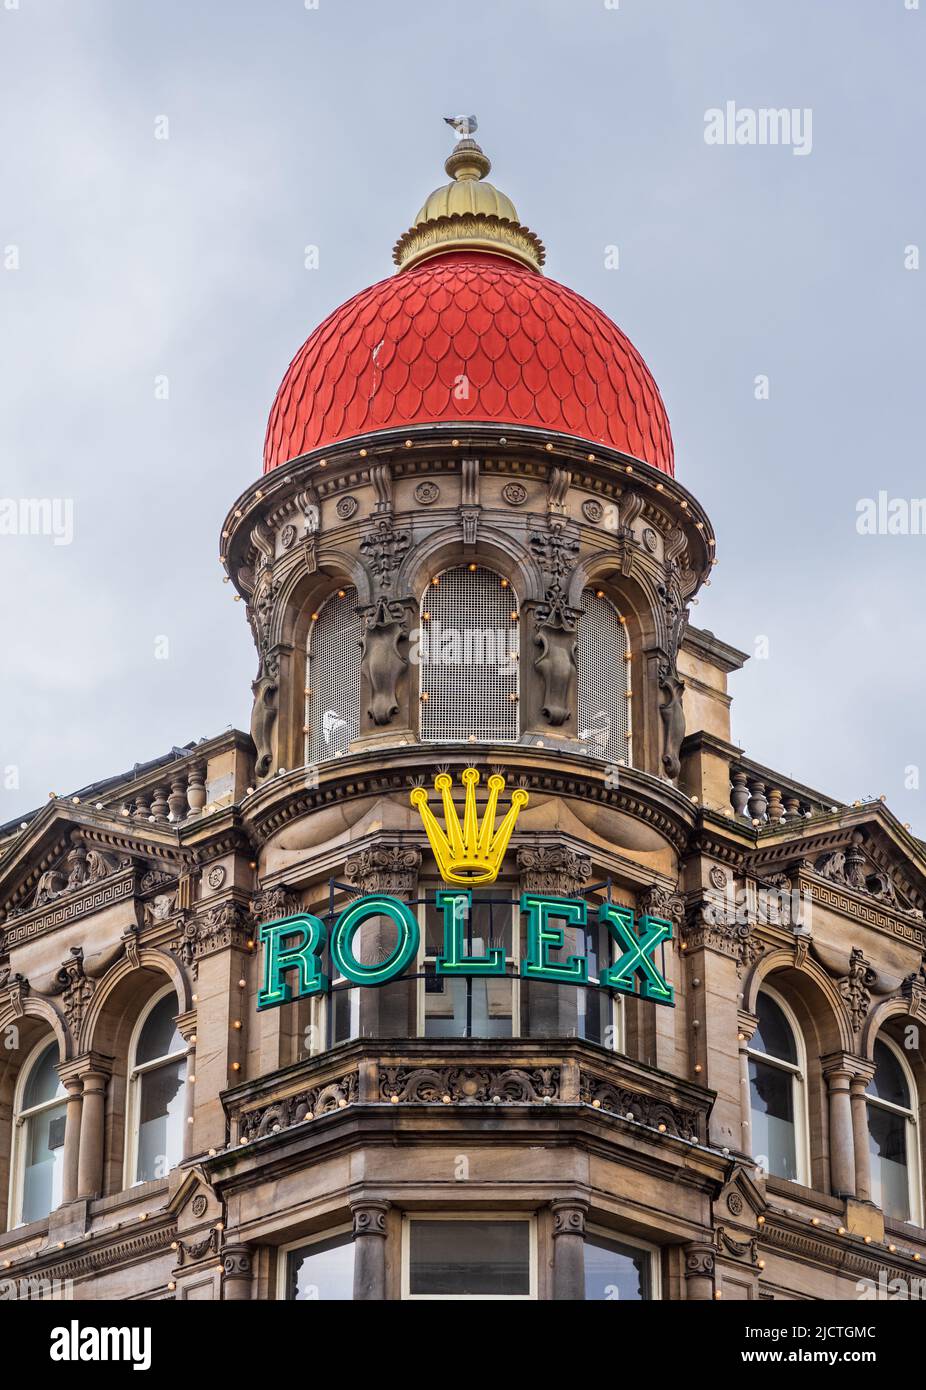 Northern Goldsmiths Store Newcastle upon Tyne. La caratteristica cupola rossa e illuminato Rolex segno sul nord Goldsmiths, la ditta fondata 1778. Foto Stock